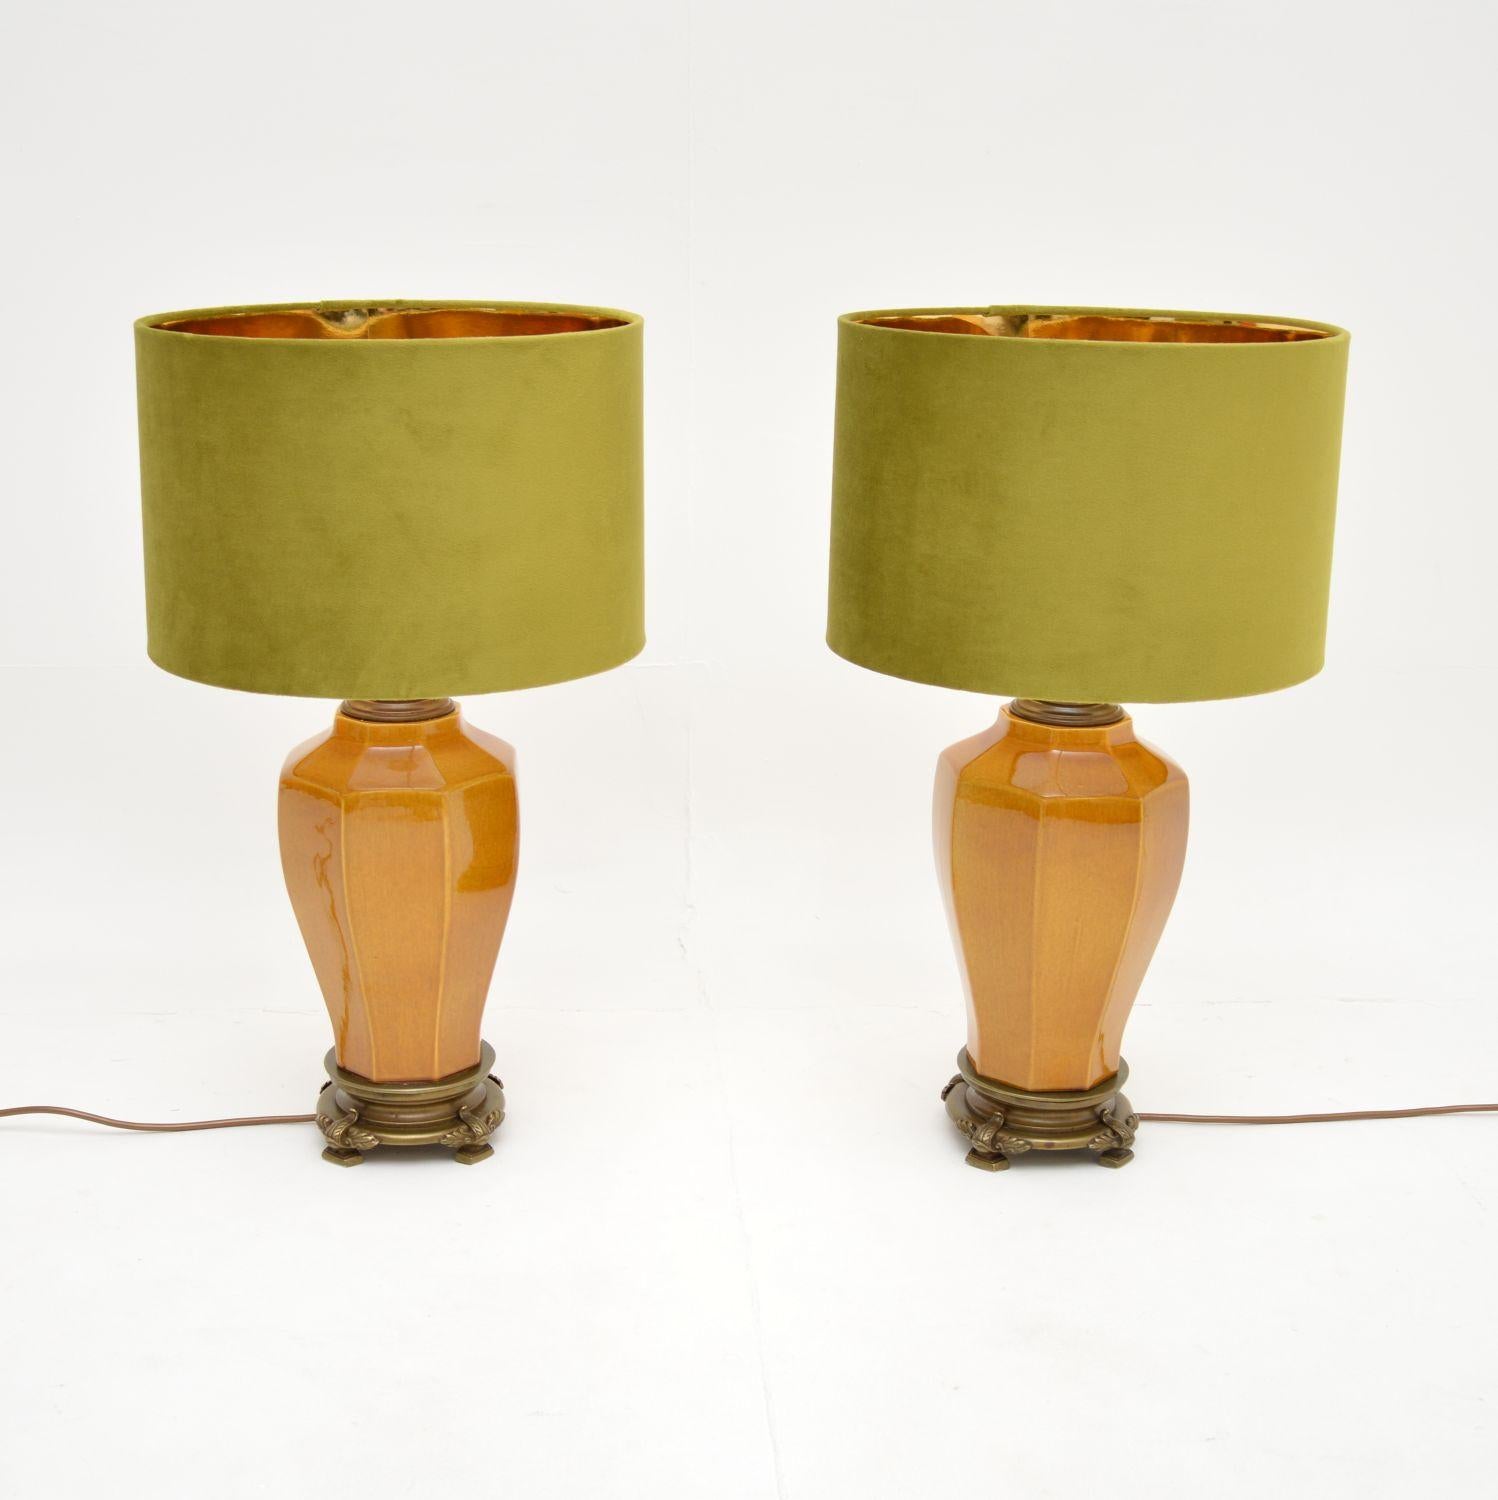 Une superbe paire de lampes de table vintage en porcelaine, fabriquées en Angleterre et datant des années 1960.

Ils sont d'une qualité étonnante, avec de grandes proportions et une glaçure de porcelaine d'une couleur magnifique. Elles reposent sur